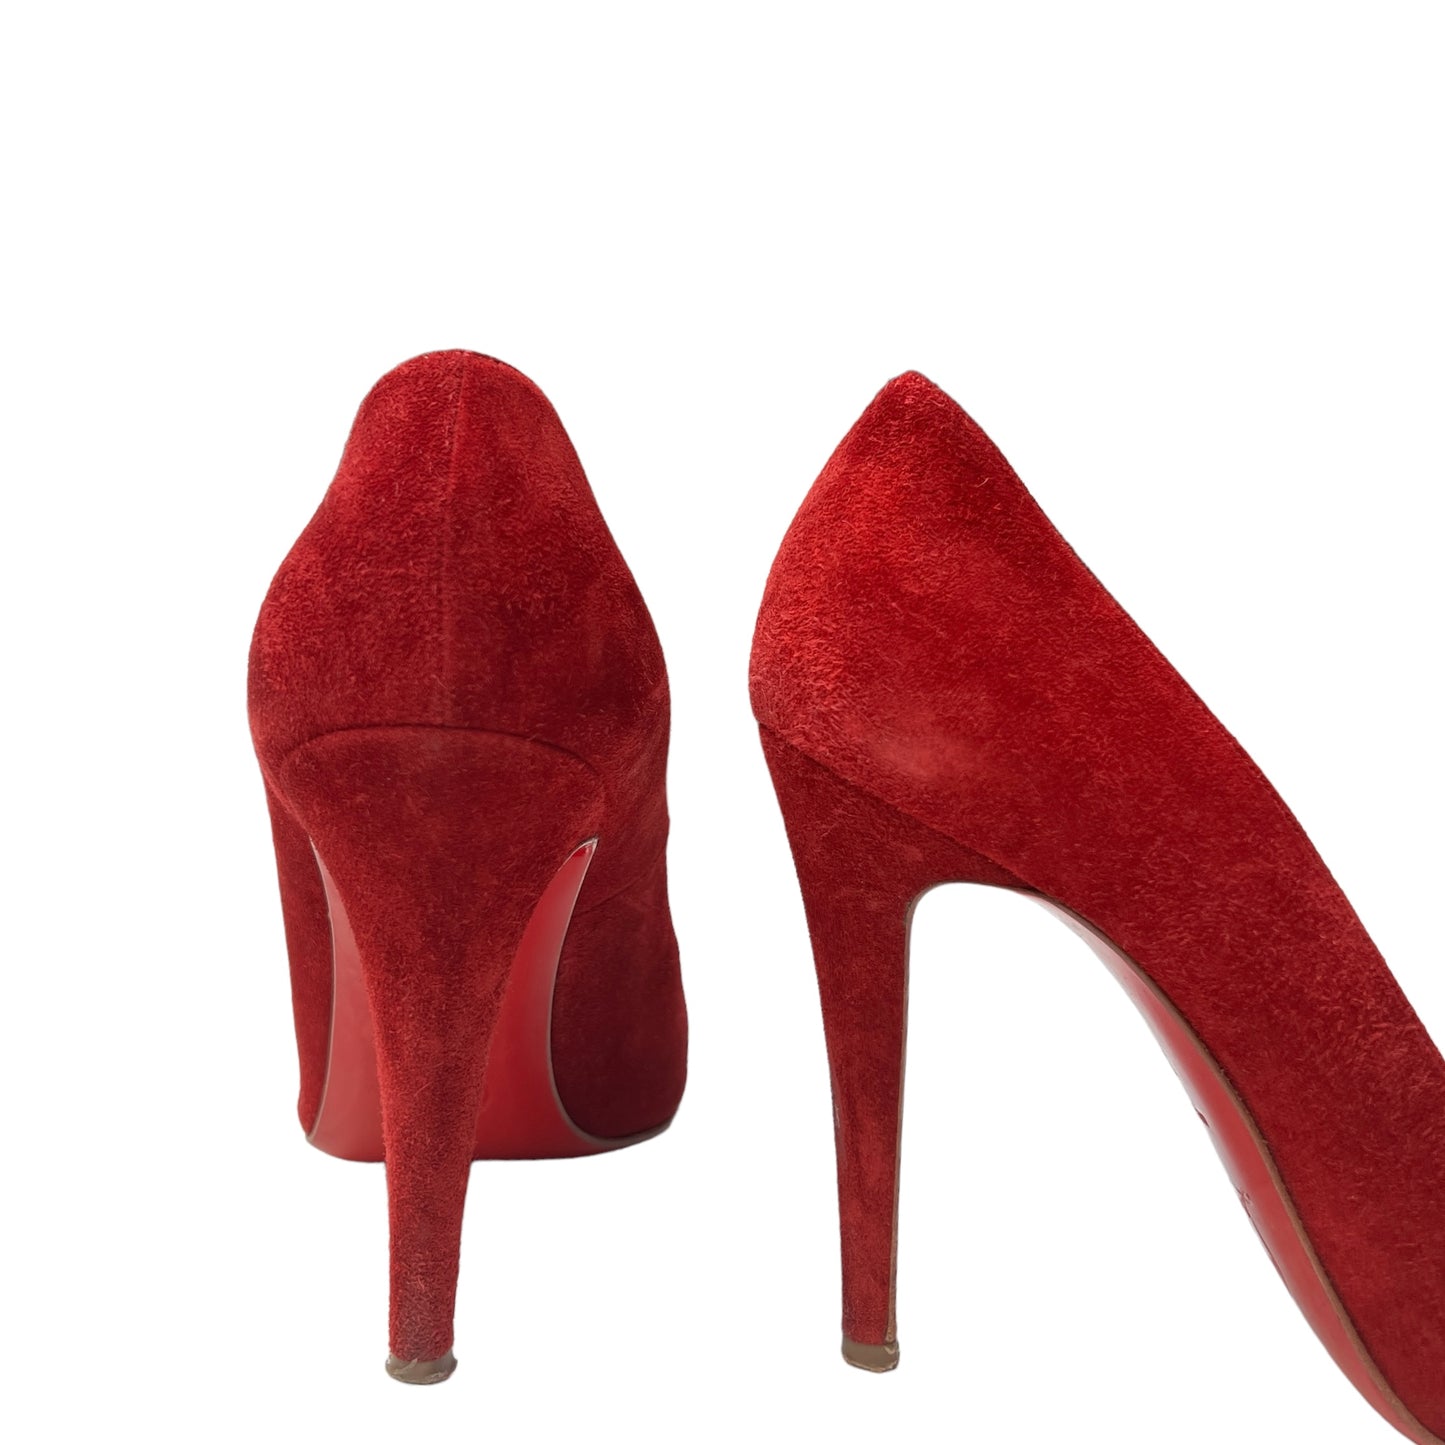 Red Suede Heels - 8.5